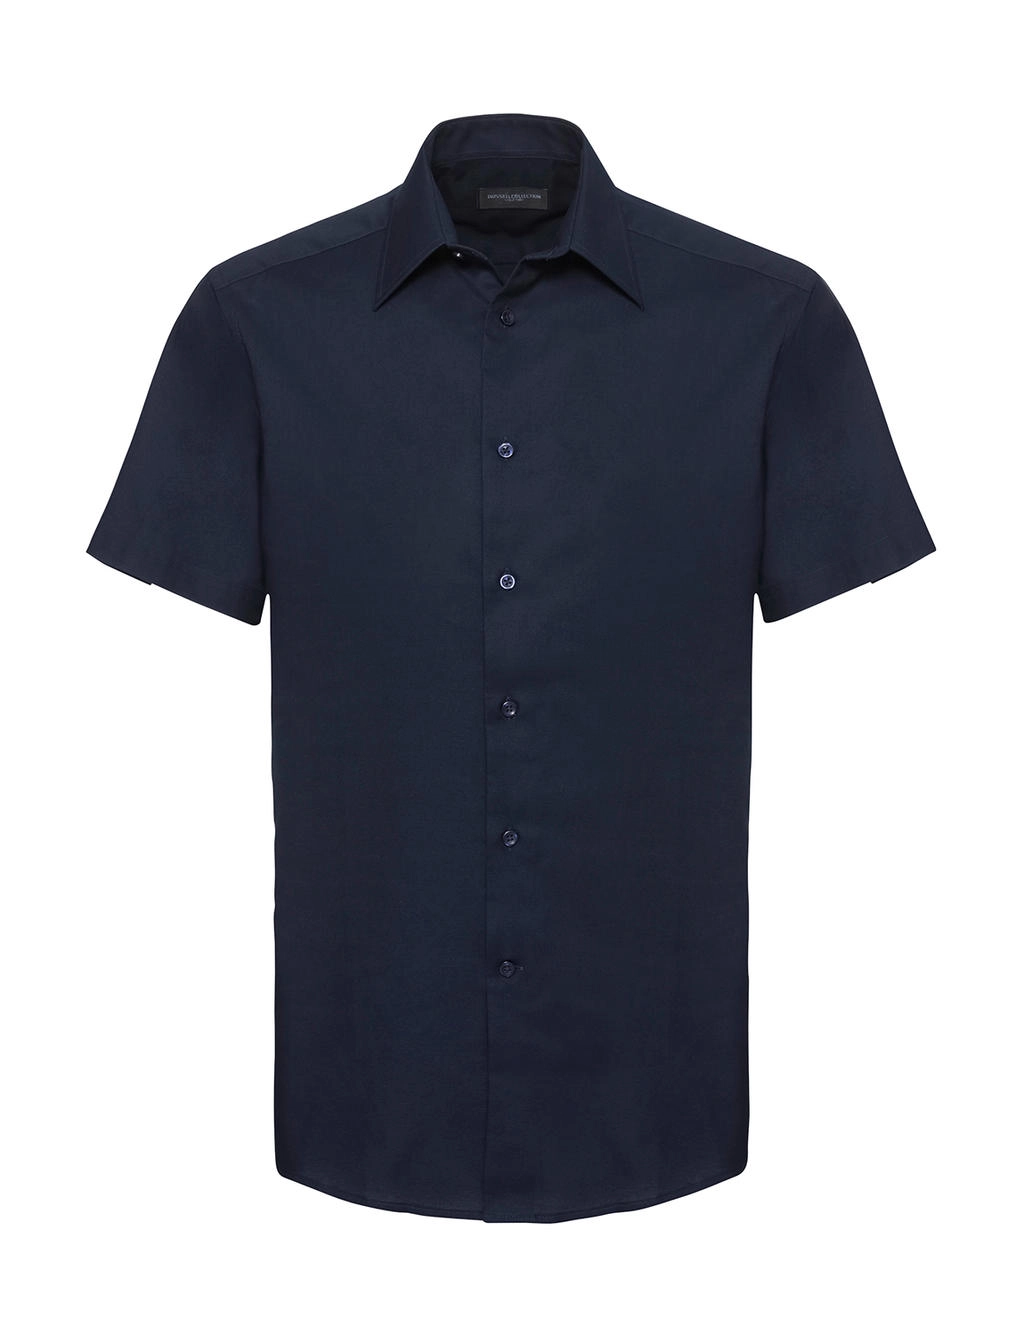 Oxford Shirt zum Besticken und Bedrucken in der Farbe Bright Navy mit Ihren Logo, Schriftzug oder Motiv.